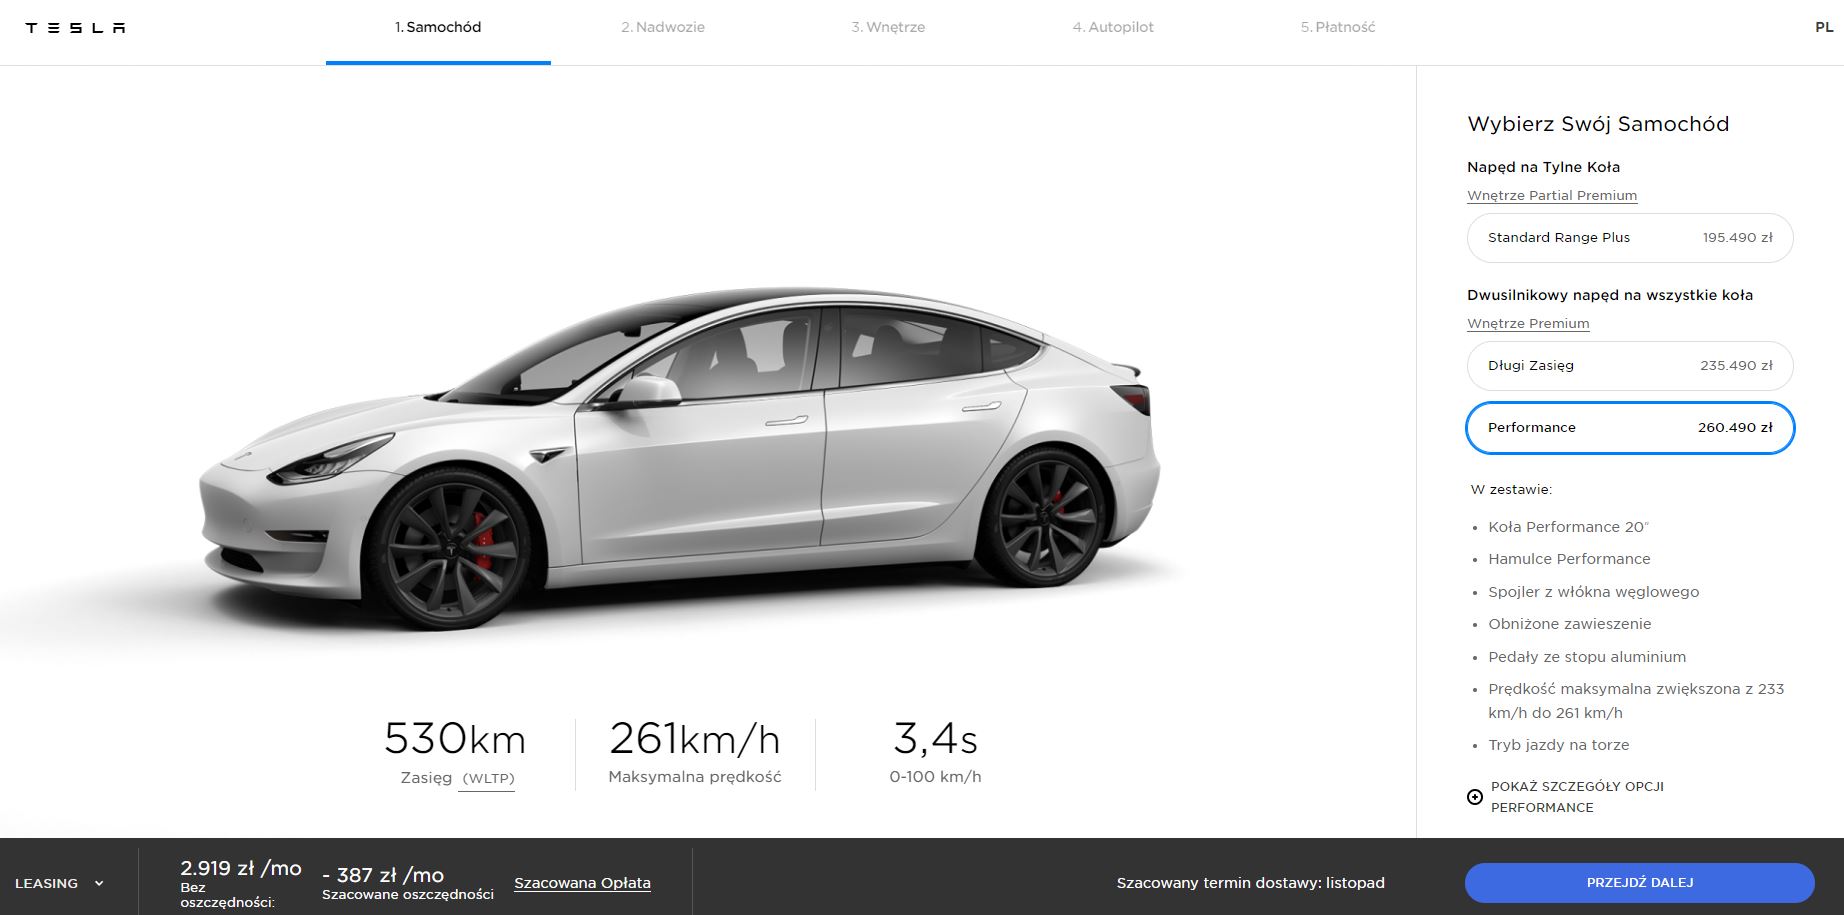 Tesla Model 3 polska cena